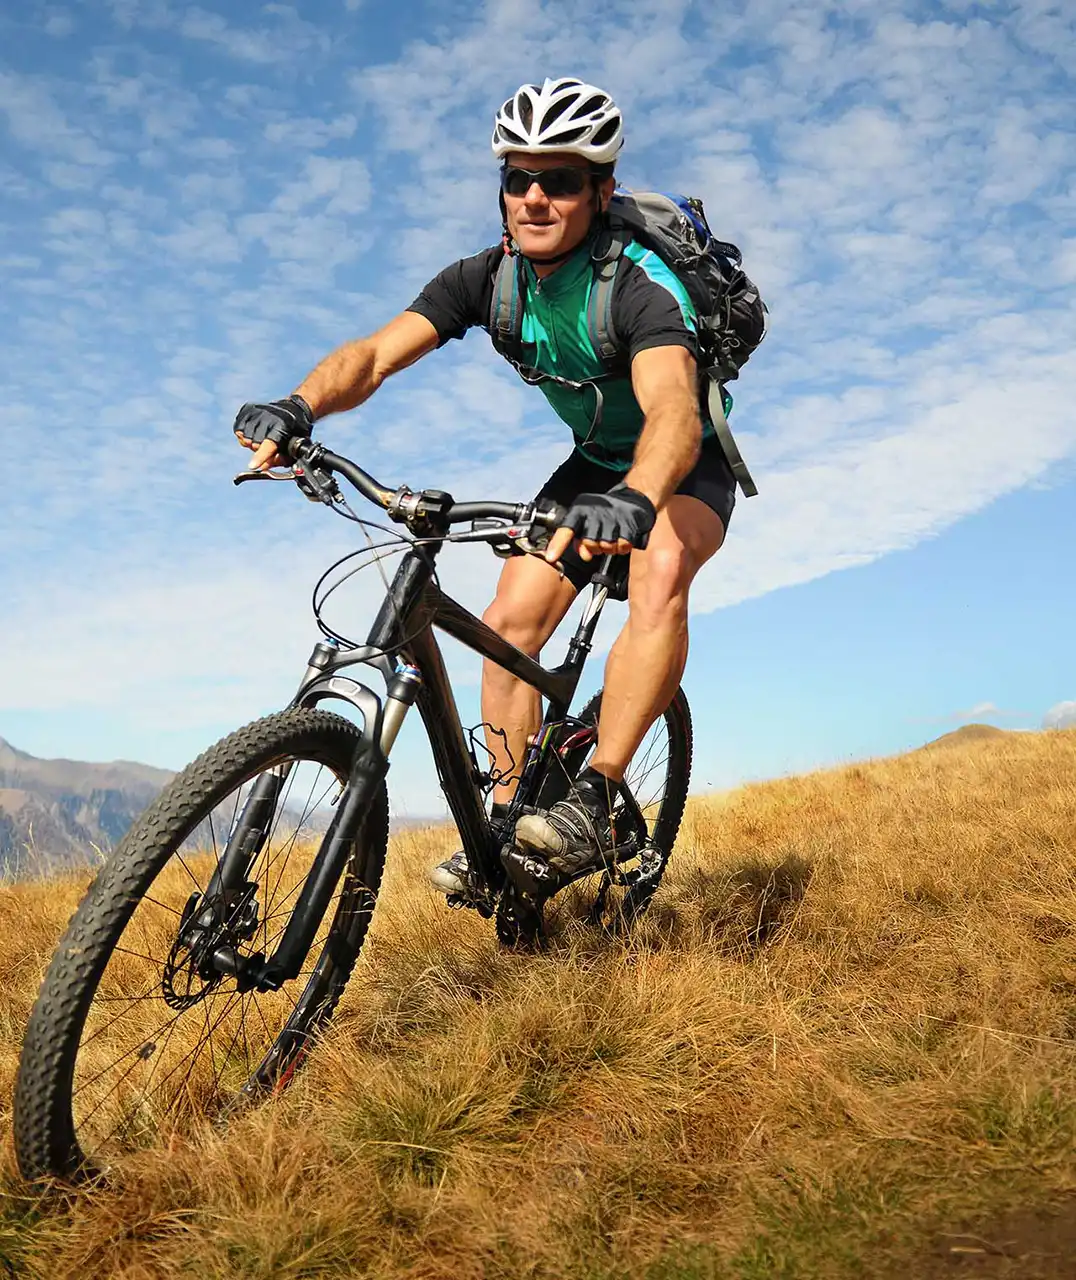 Xe đạp địa hình được thiết kế để đi trên các địa hình đồi núi phức tạp